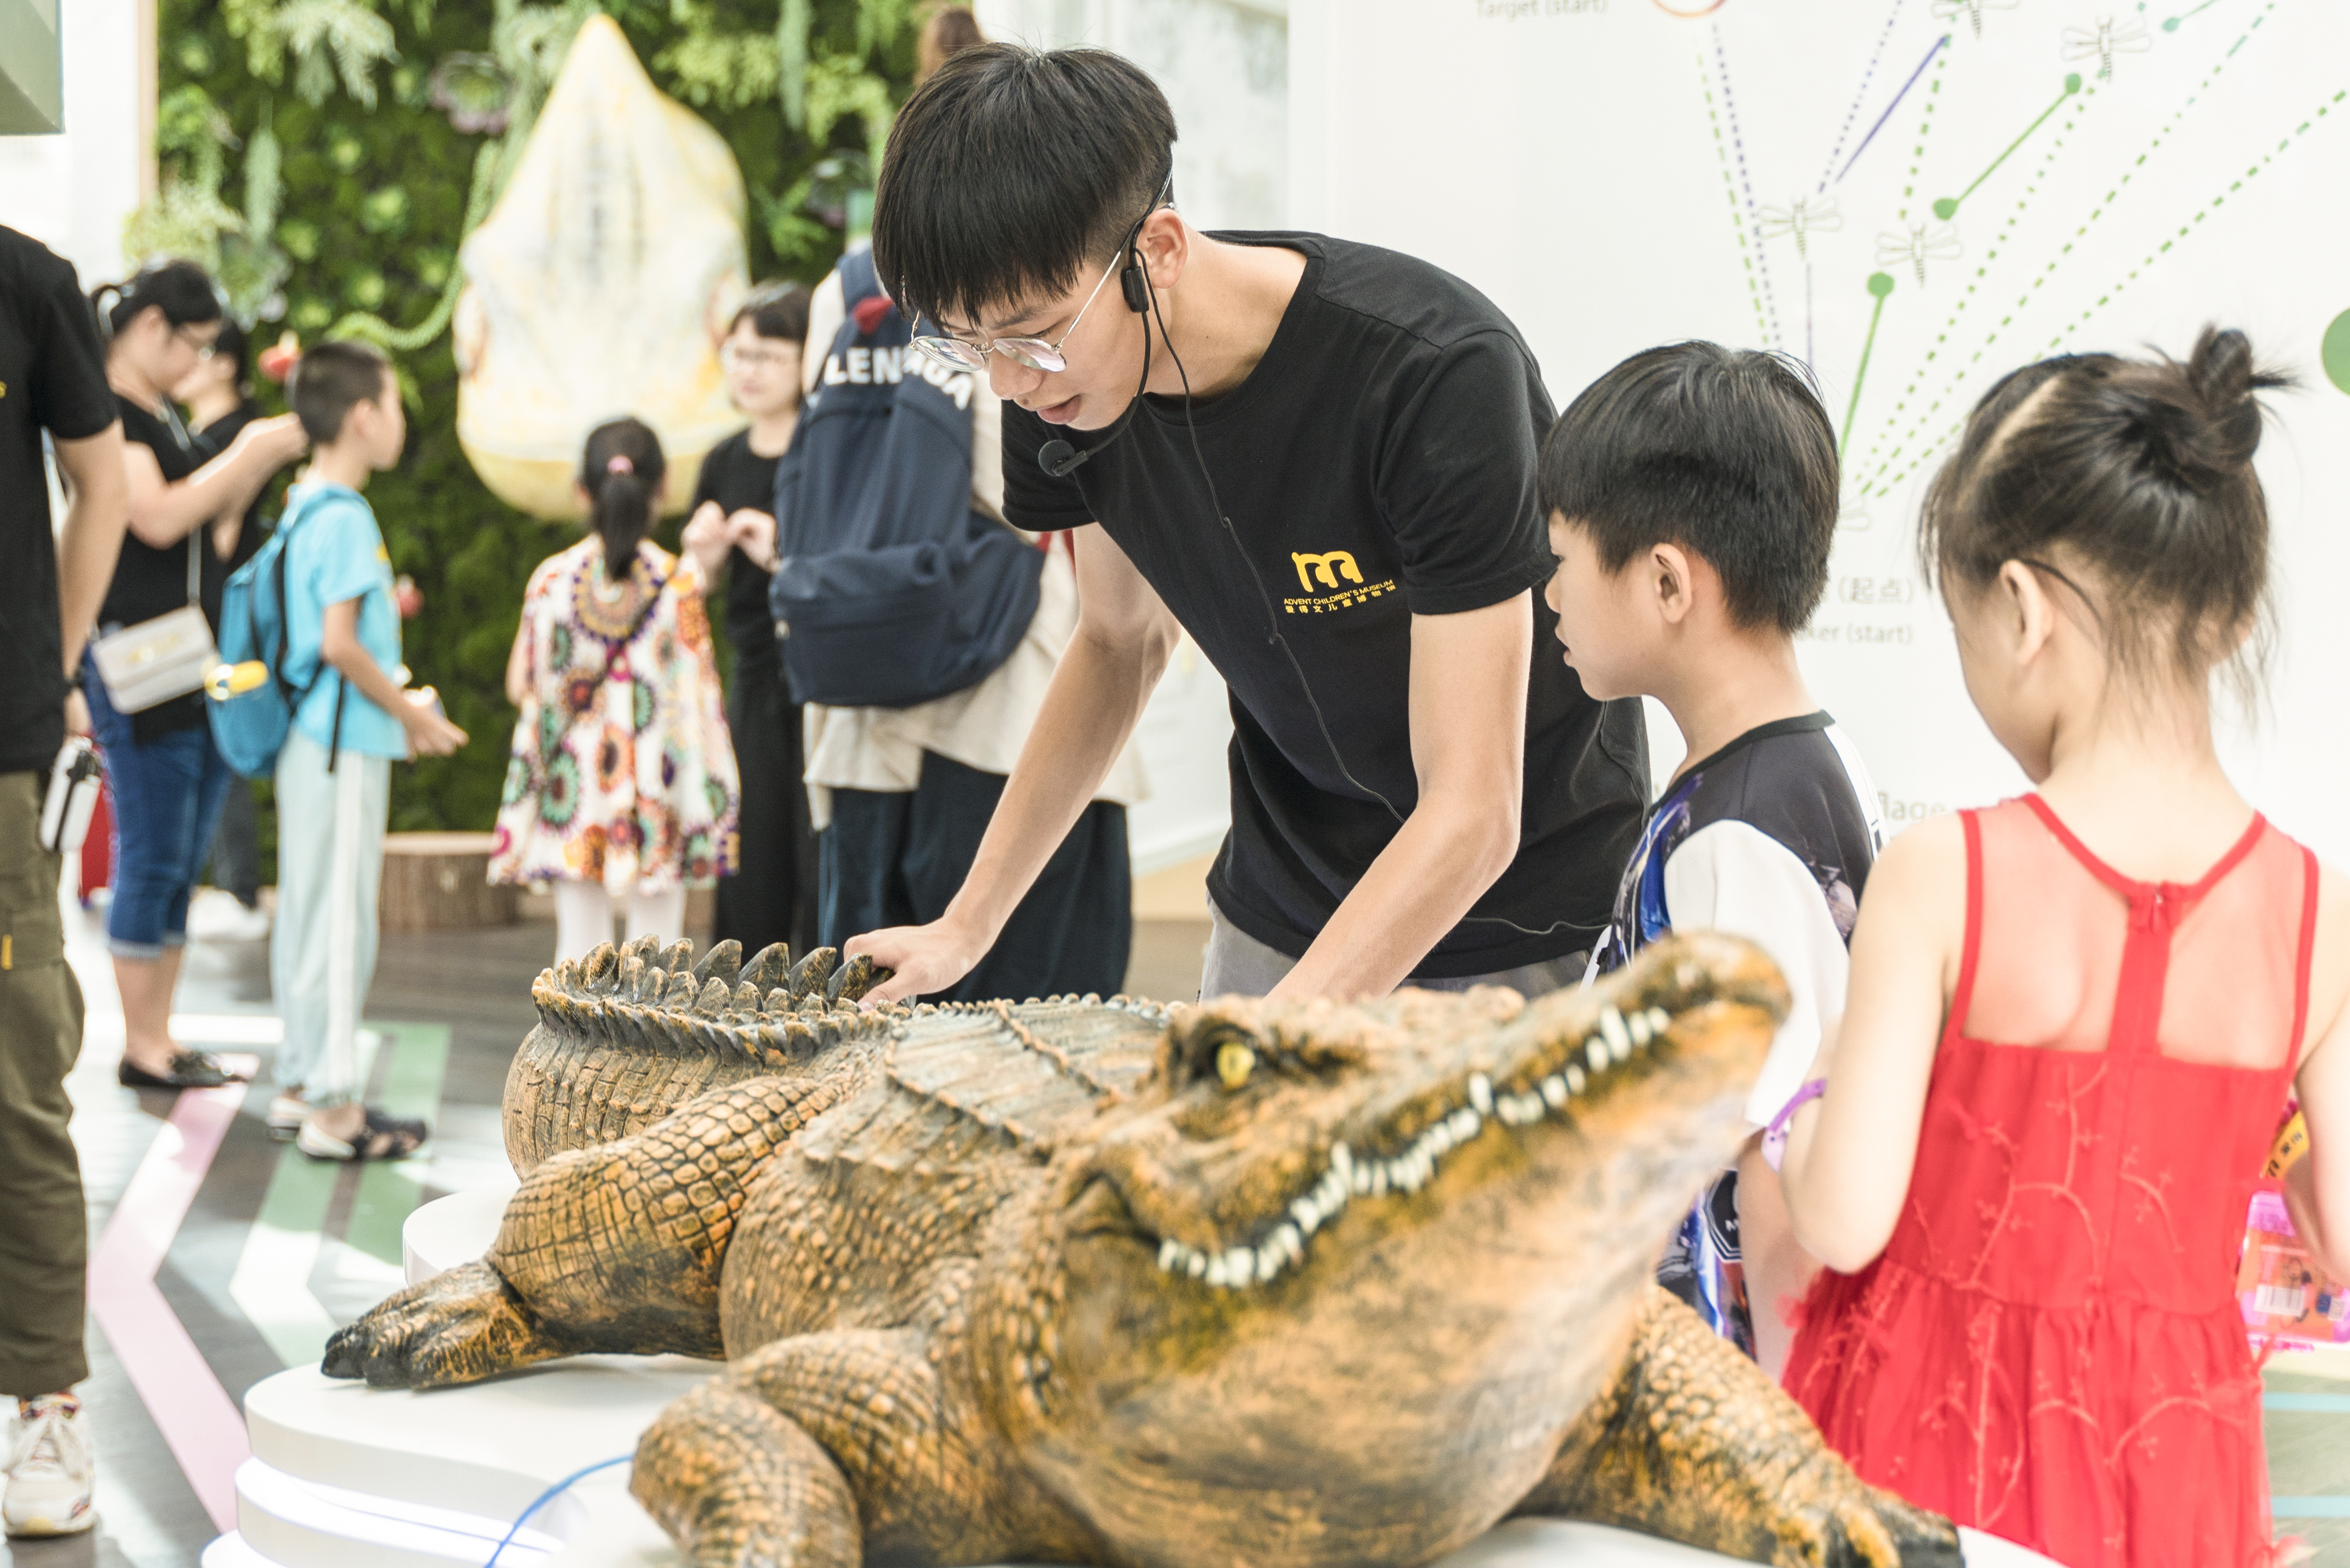 展览引导员向小朋友们介绍鳄鱼神奇的身体构造